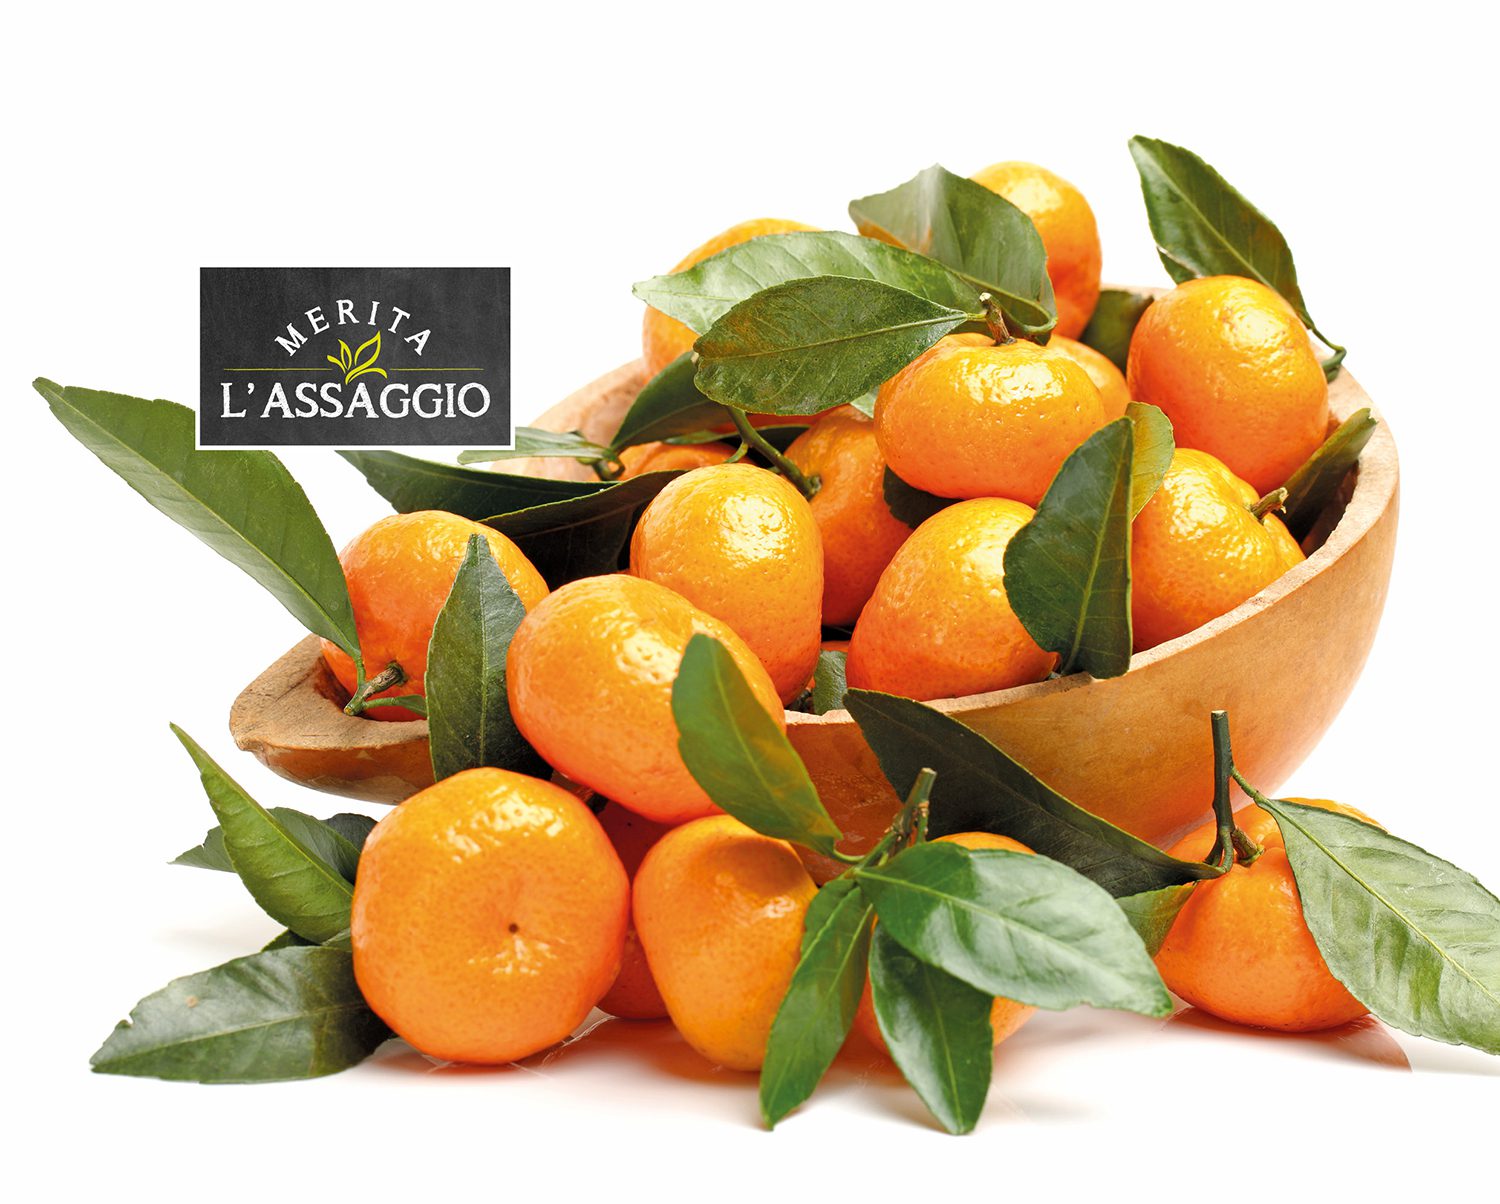 Una dolce nota dalla Sicilia: il mandarino tardivo di Ciaculli Merita l’Assaggio di TIGROS